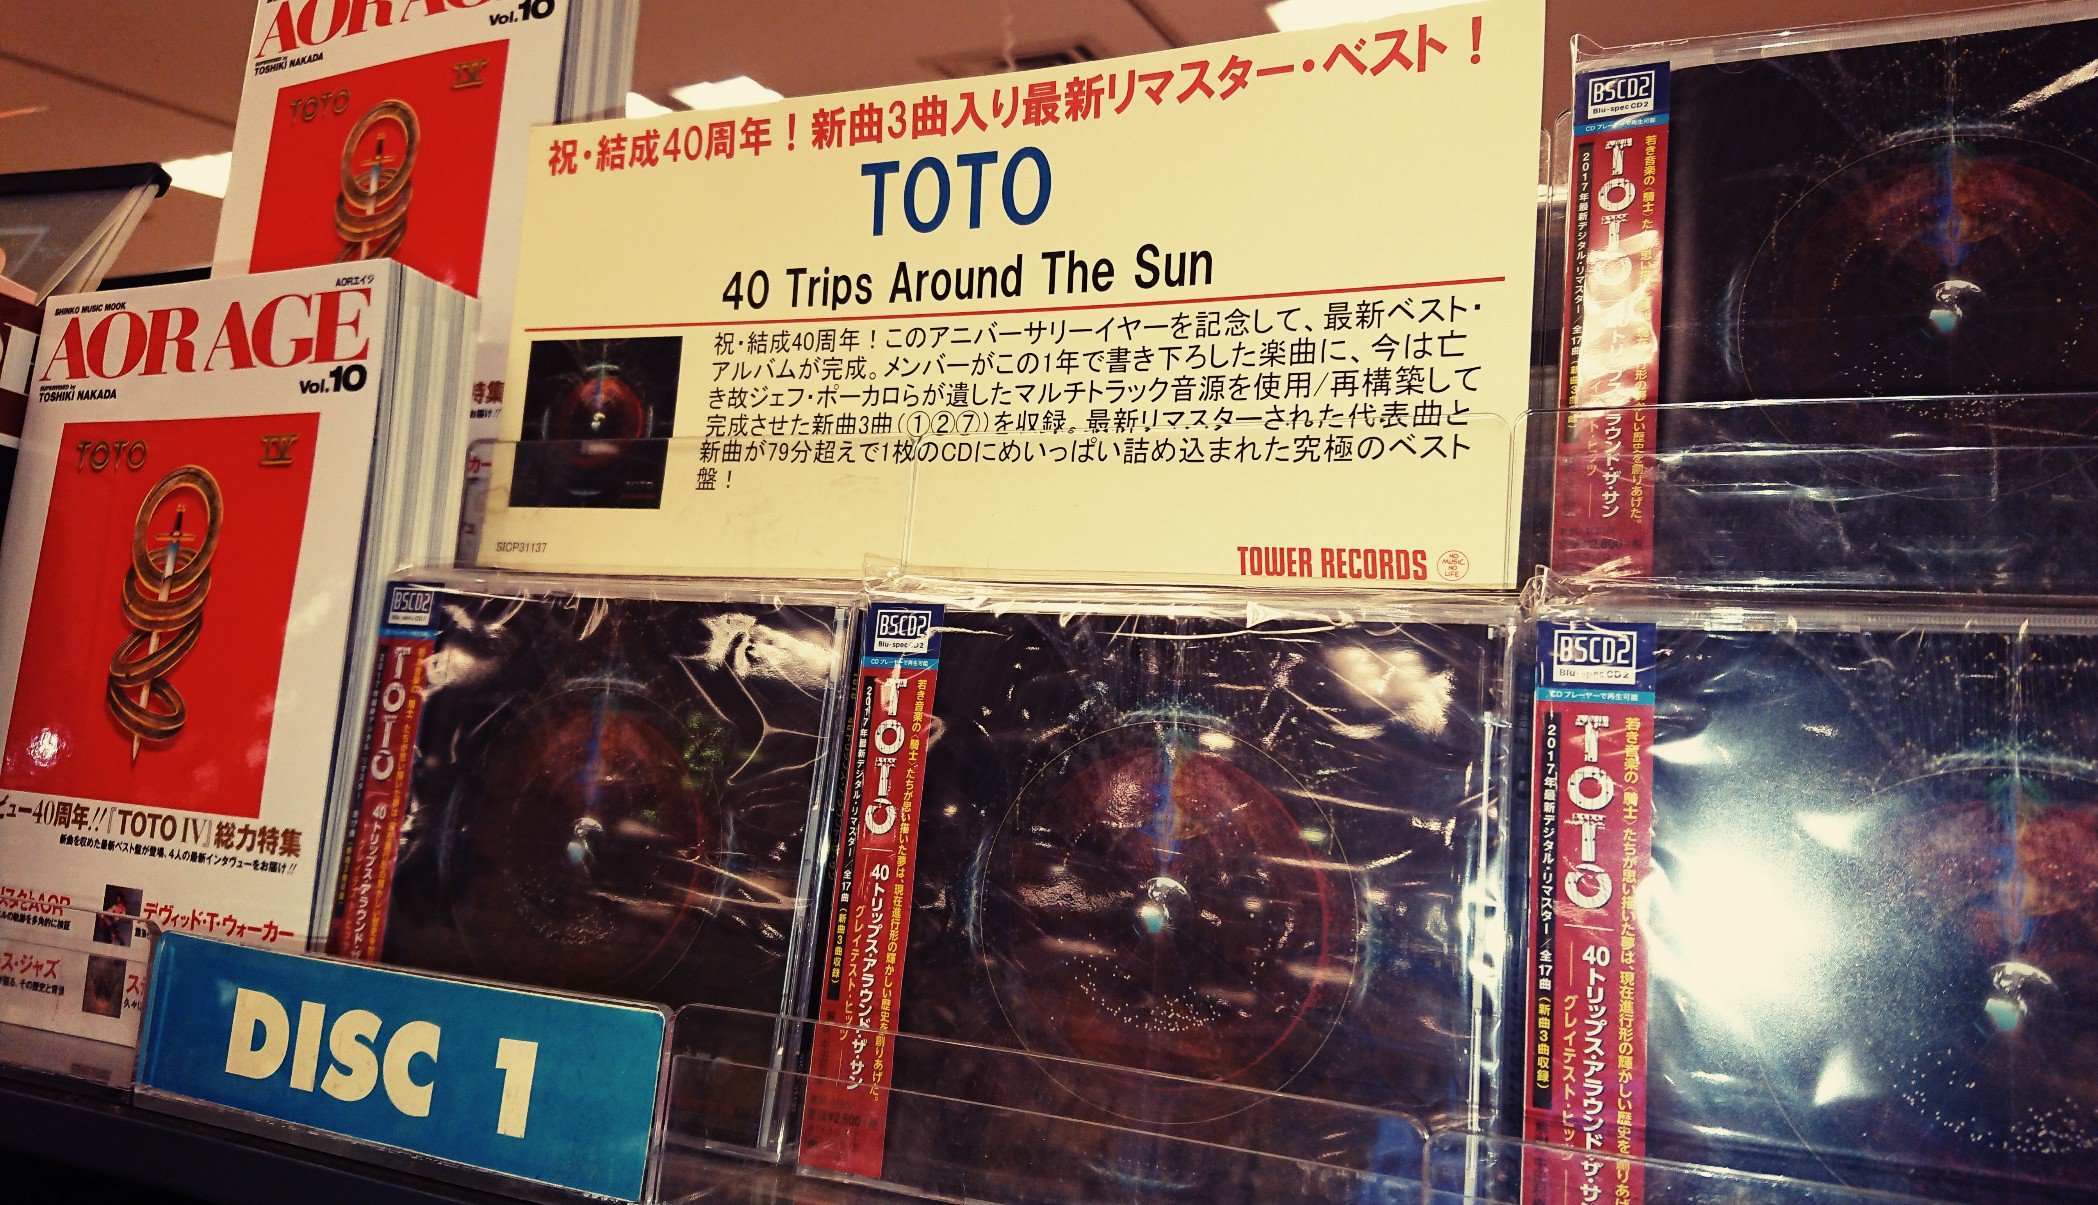 ট ইট র タワーレコード新宿店 9f Rock 祝 結成40周年 Toto アニバーサリーイヤーを記念しての最新ベスト アルバム 好評発売中です 最新リマスターされたバンドの代表曲と 新しくも懐かしい新曲3曲を収録した79分超えの究極のベスト盤 Toto特集の Aor